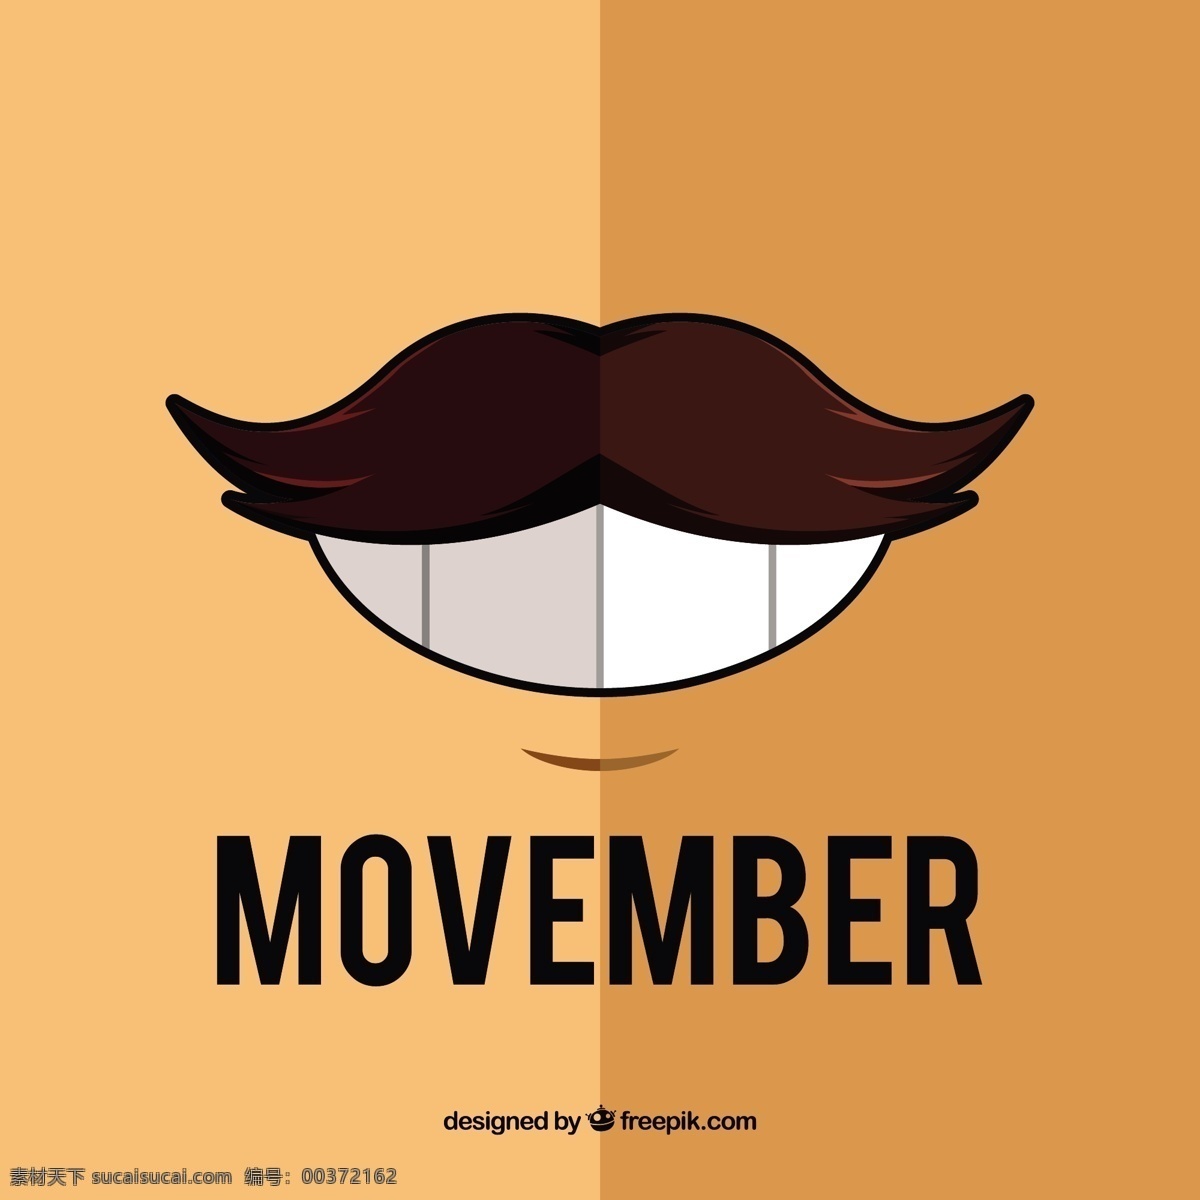 十一月 背景 胡子 一个 大大 微笑 男人 头发 健康 平 庆典 活动 牙齿 男性 平面设计 帮助 理发 支持符号 战斗